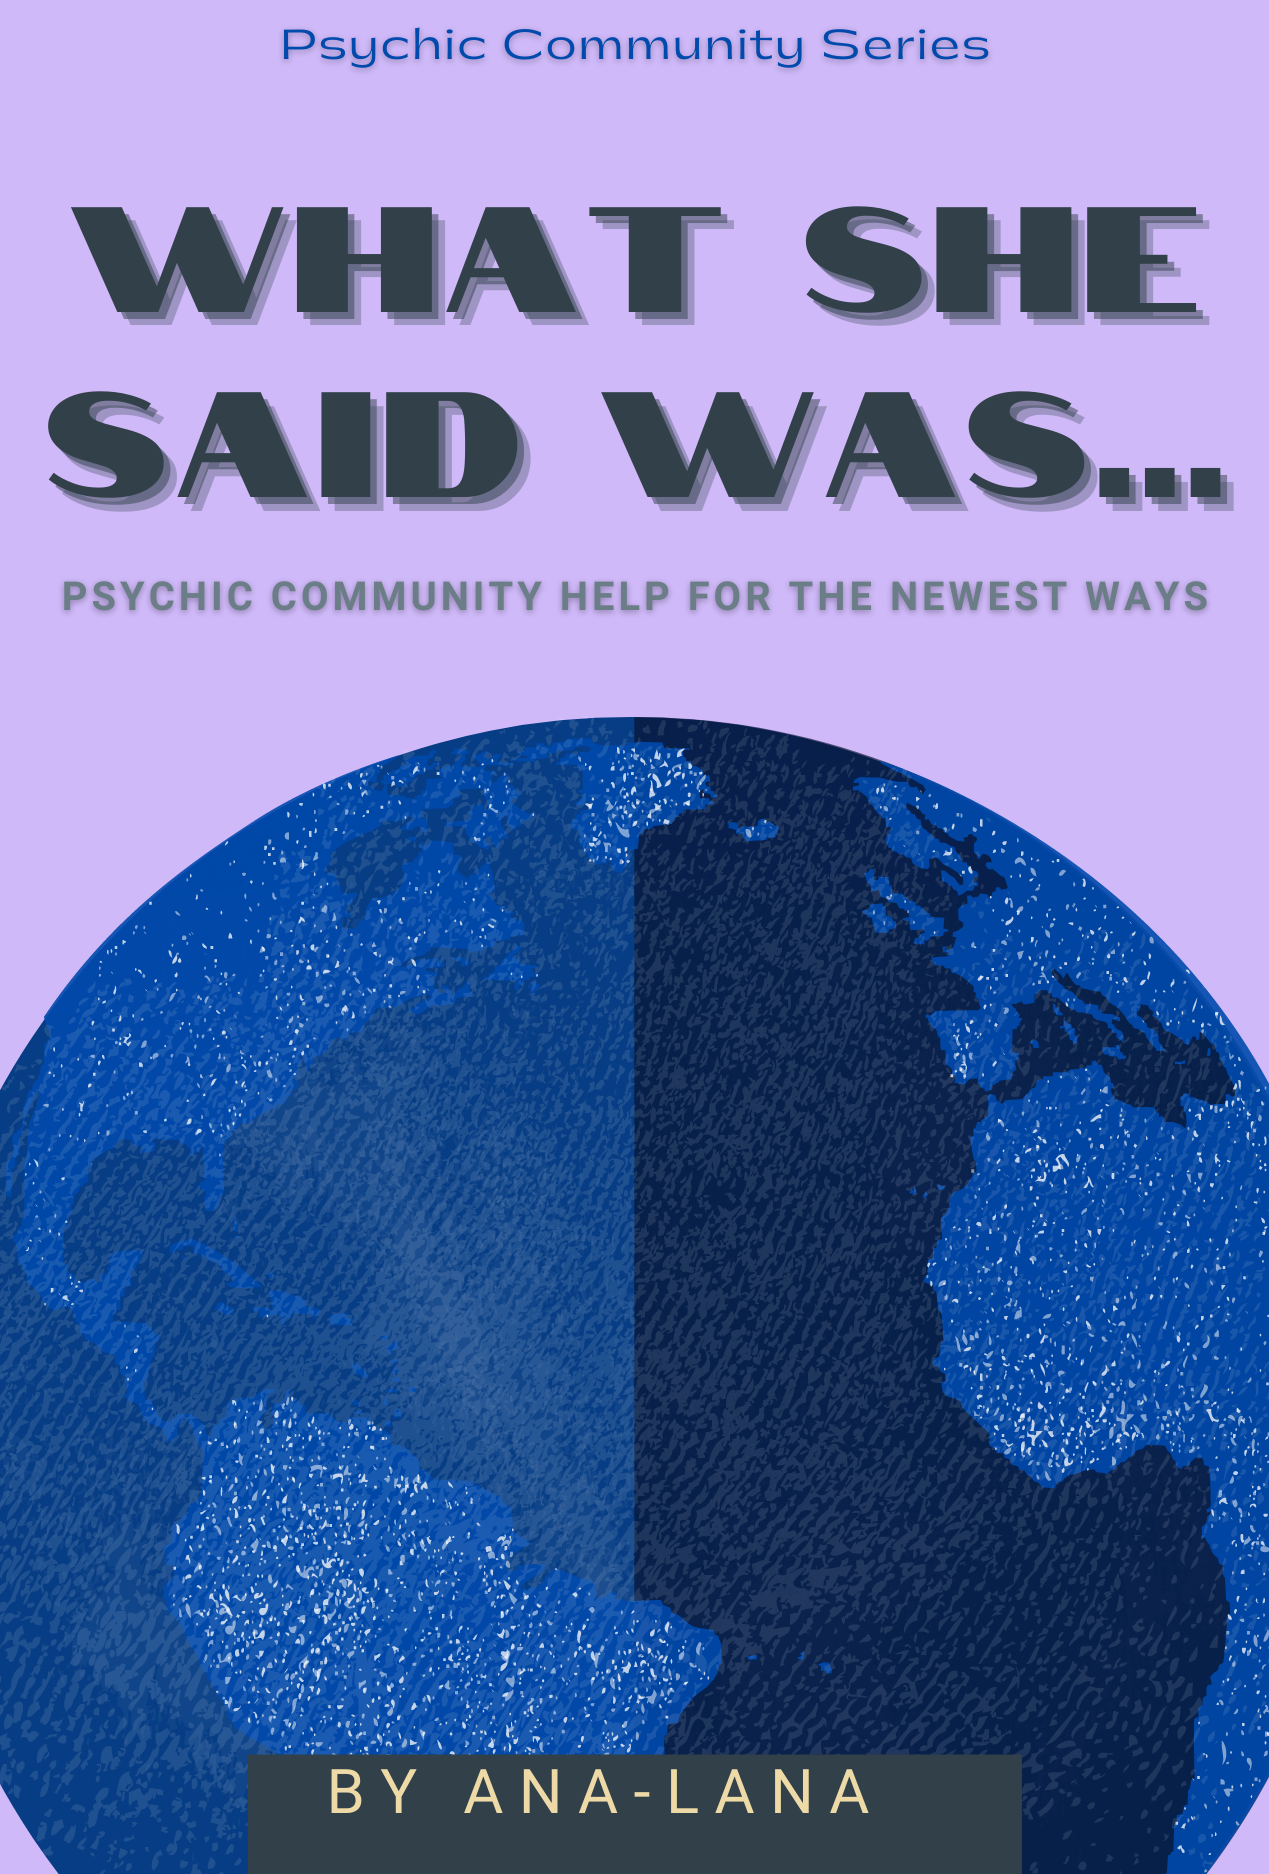 Psychic Community